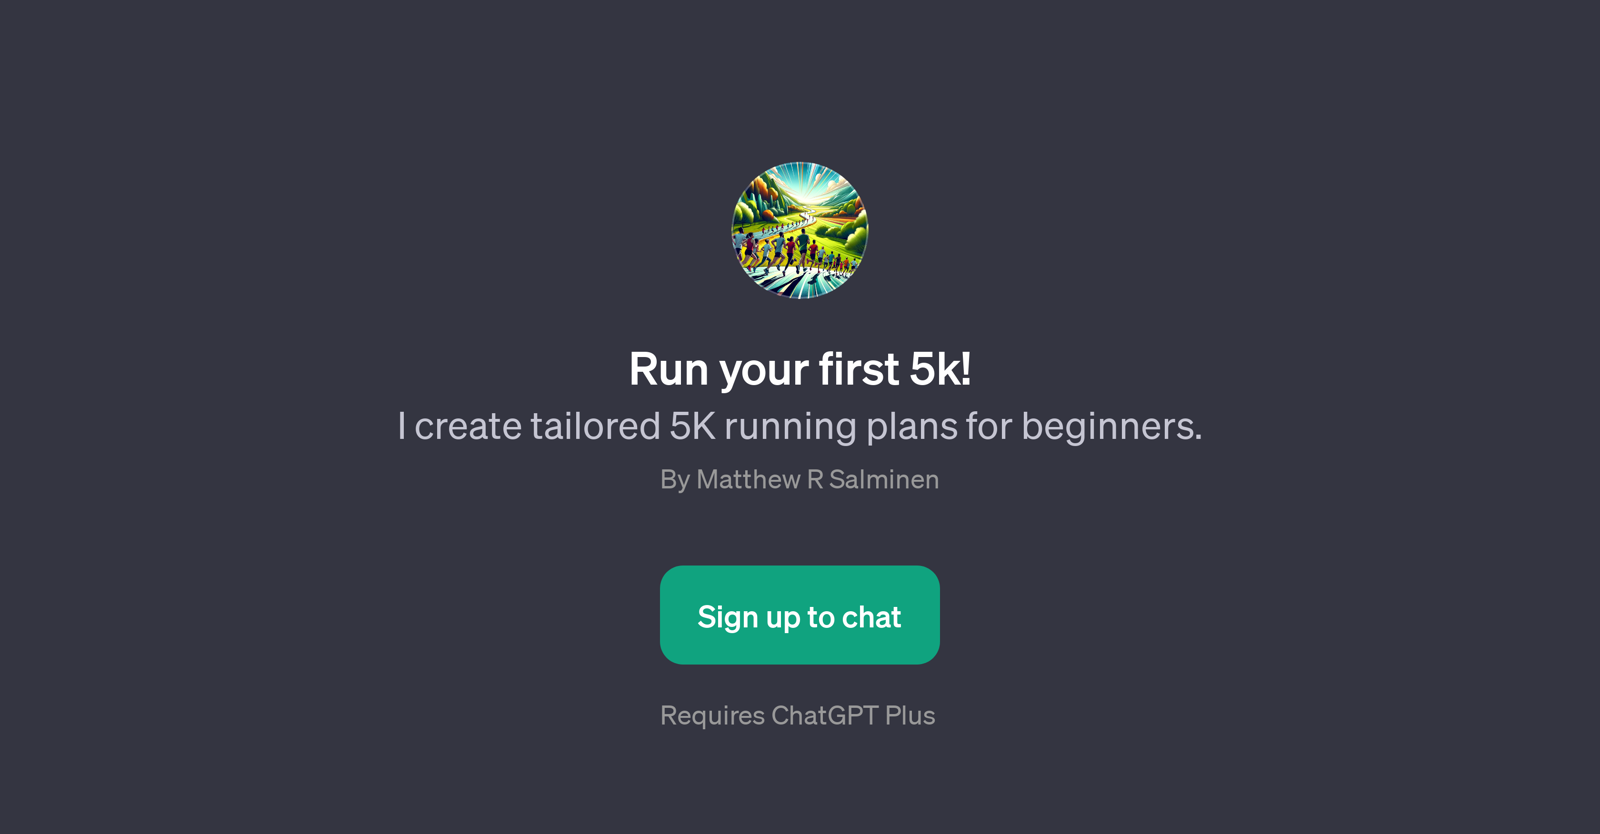 Run your first 5k! website